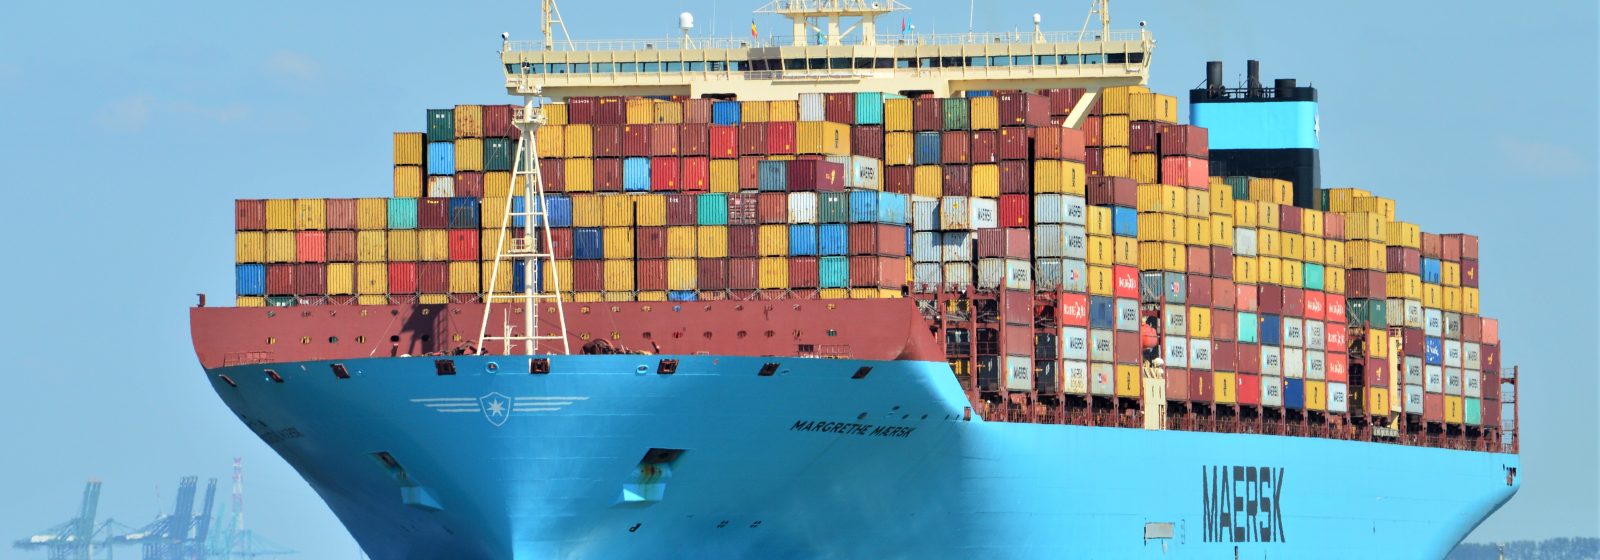 De 'Margrethe Maersk' bij afvaart van de Westerschelde na een Antwerpse call size van meer dan tienduizend containers